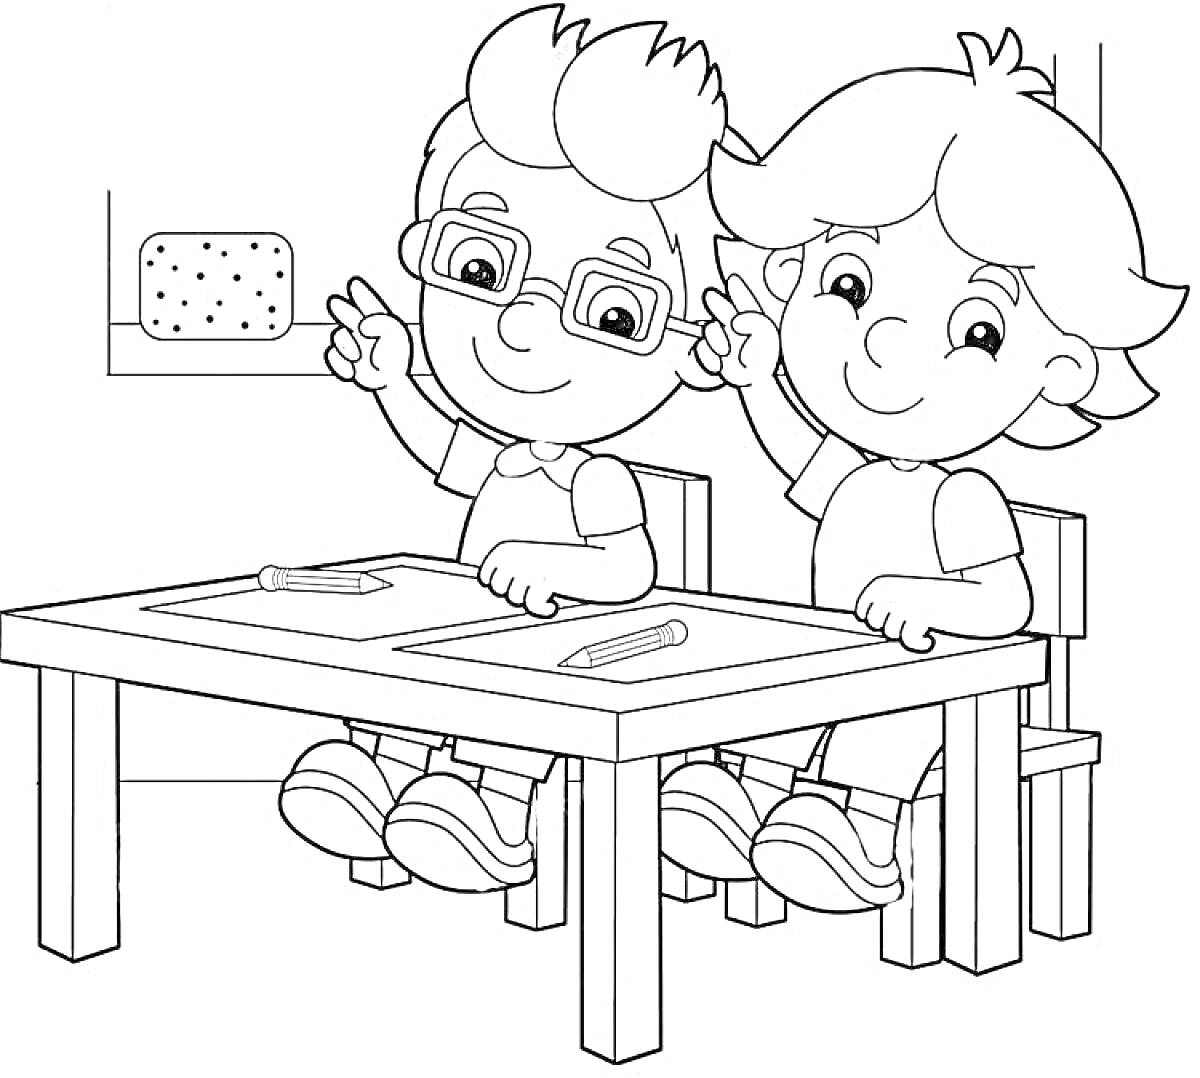 Раскраска Два ребенка сидят за партой, на парте лежат тетрадки и карандаши, на фоне – классная доска с губкой